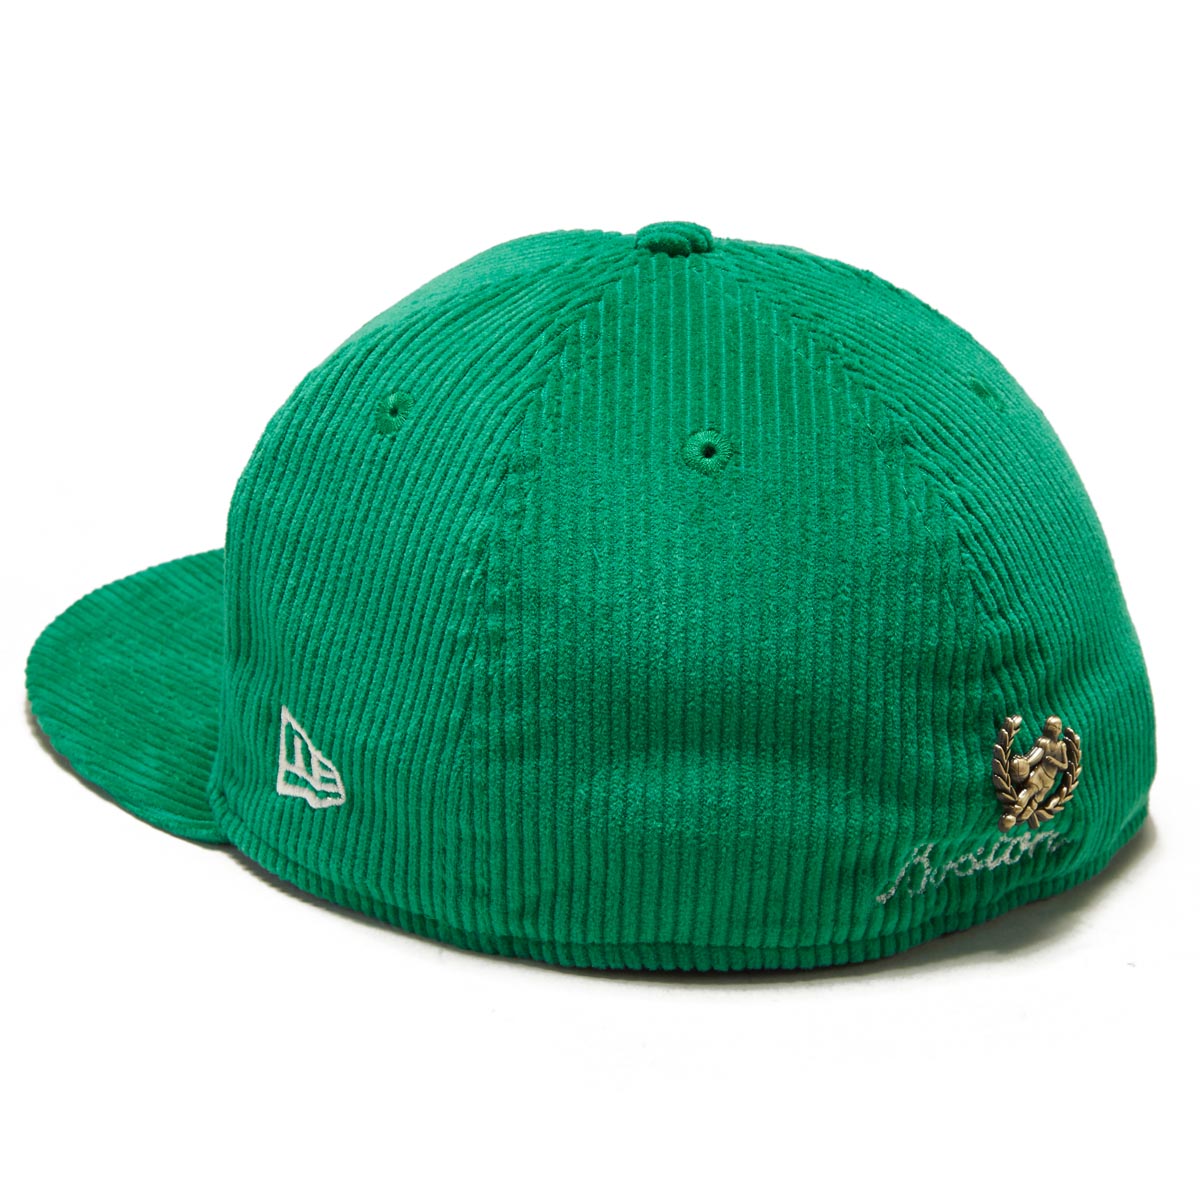 New Era 5950 Letterman Pin Hat - Boston Celtics image 2